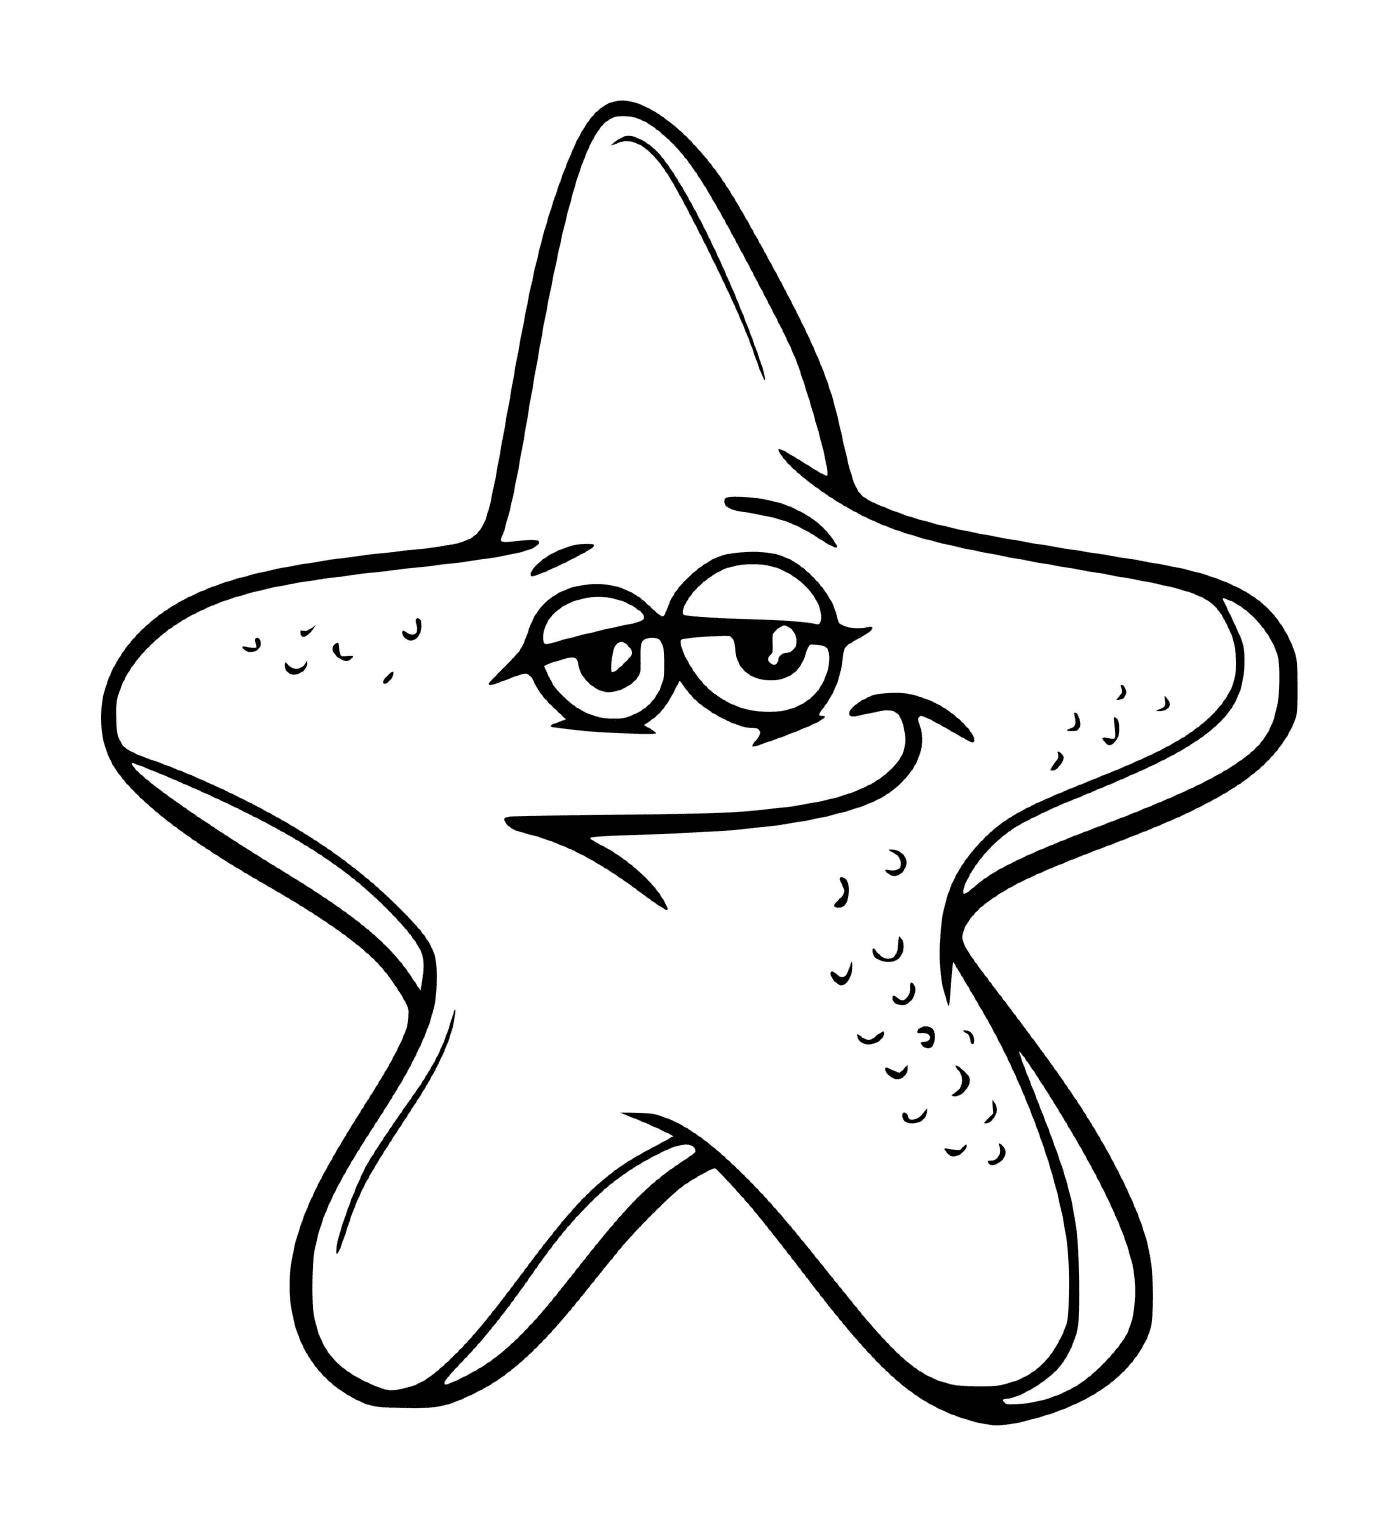  una estrella del mar con ojos 